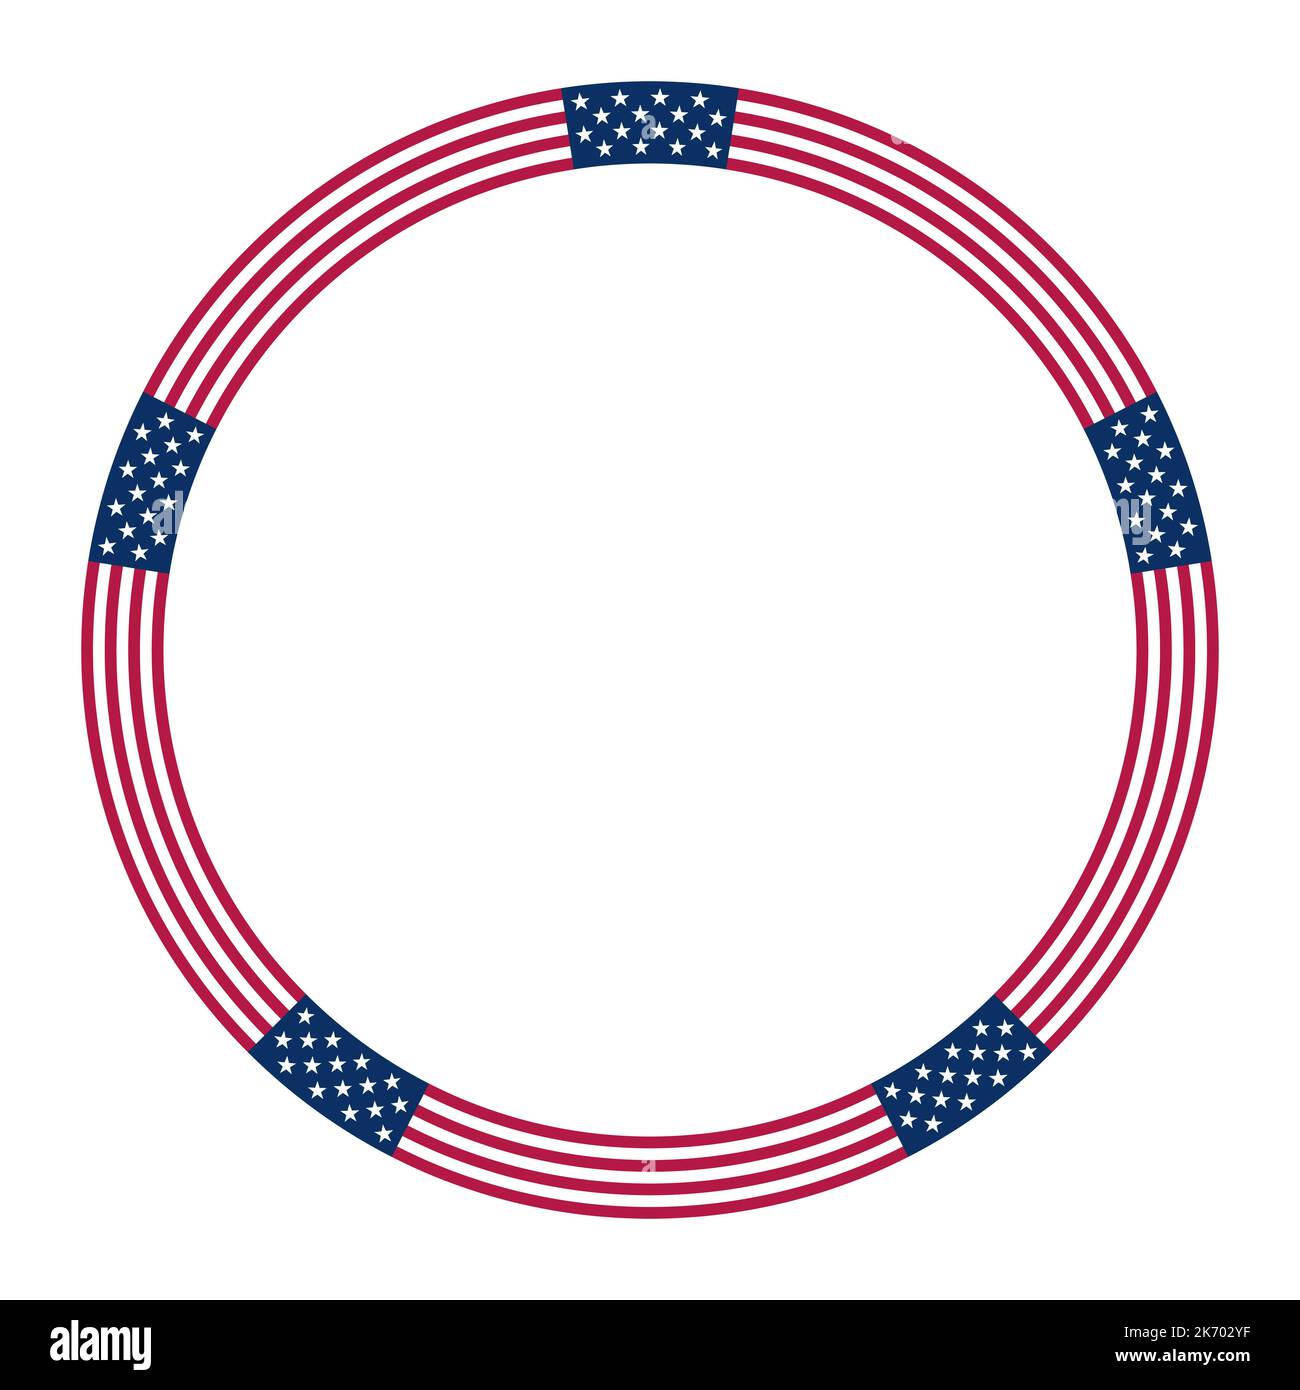 Amerikanisches Flaggen-Motiv, Kreisrahmen. Kreisförmige Bordüre mit Sternen- und Streifenmuster, basierend auf der Nationalflagge der Vereinigten Staaten. Stockfoto